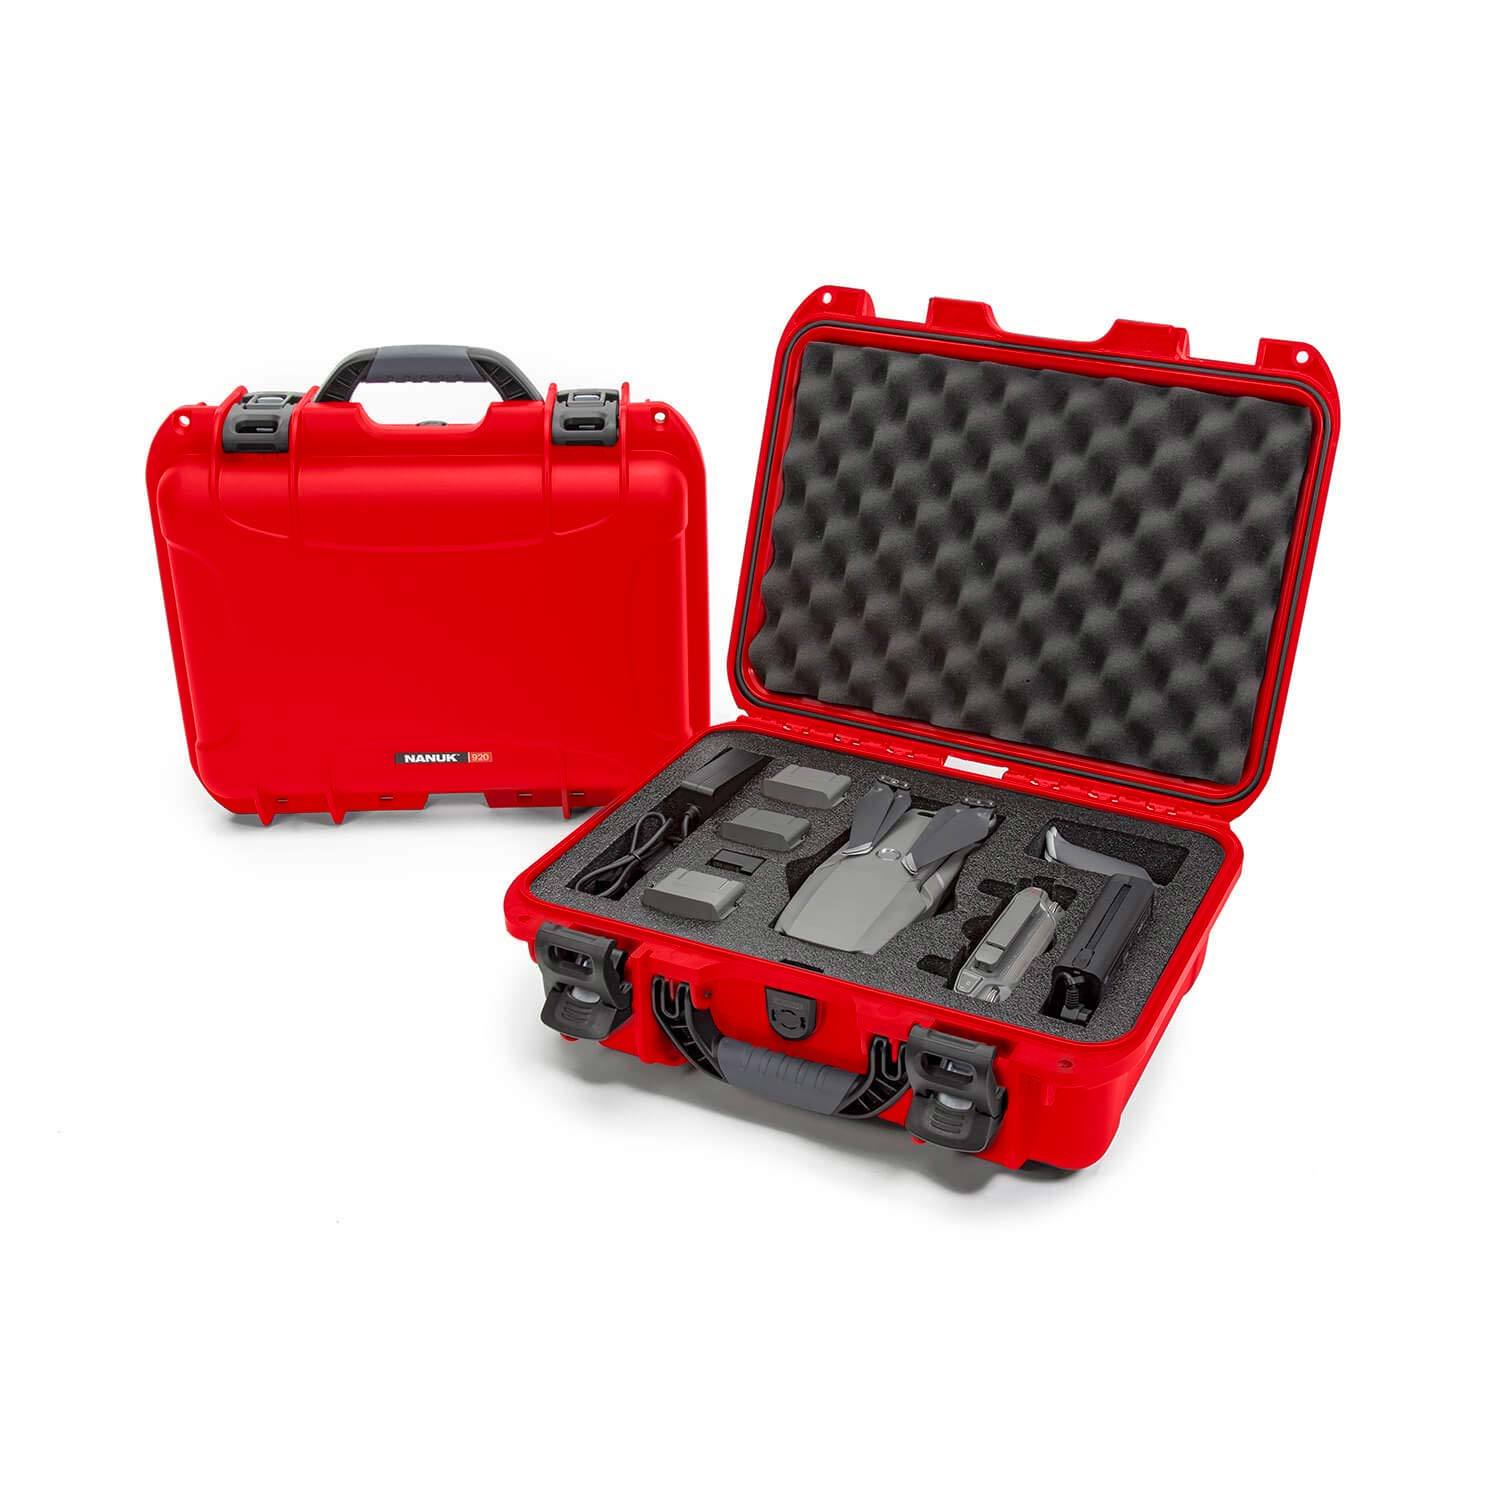 NANUK 920 DJI Mavic 2 Pro | Zoom-Drone valisee-Rouge-NANUK